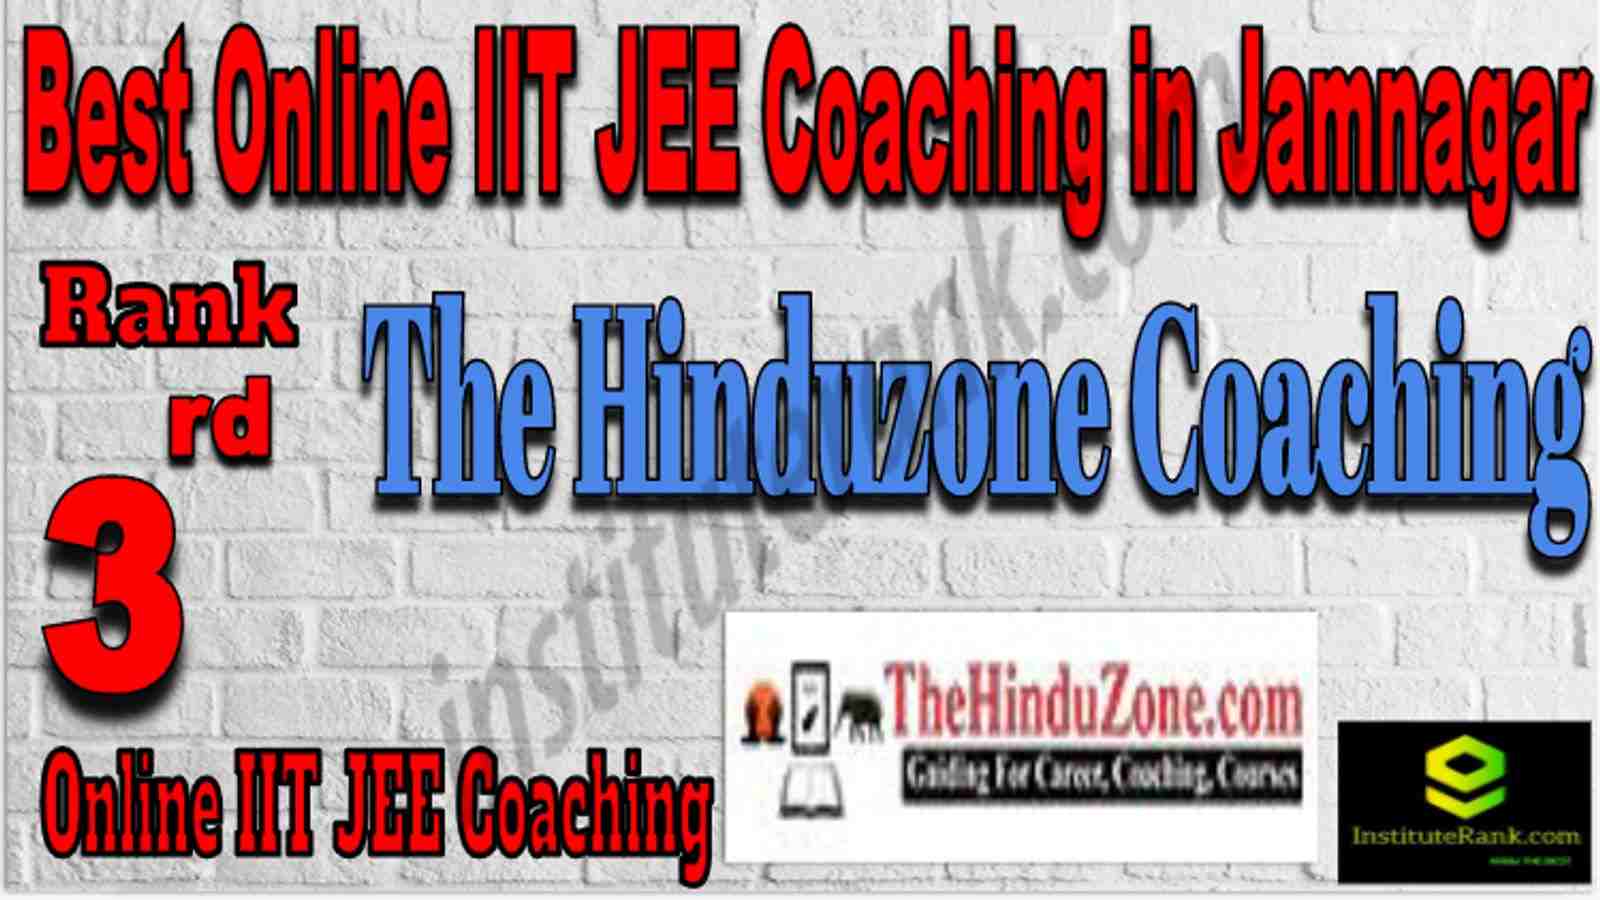 Rank 3 Best Online IIT JEE Coaching in Jamnagar